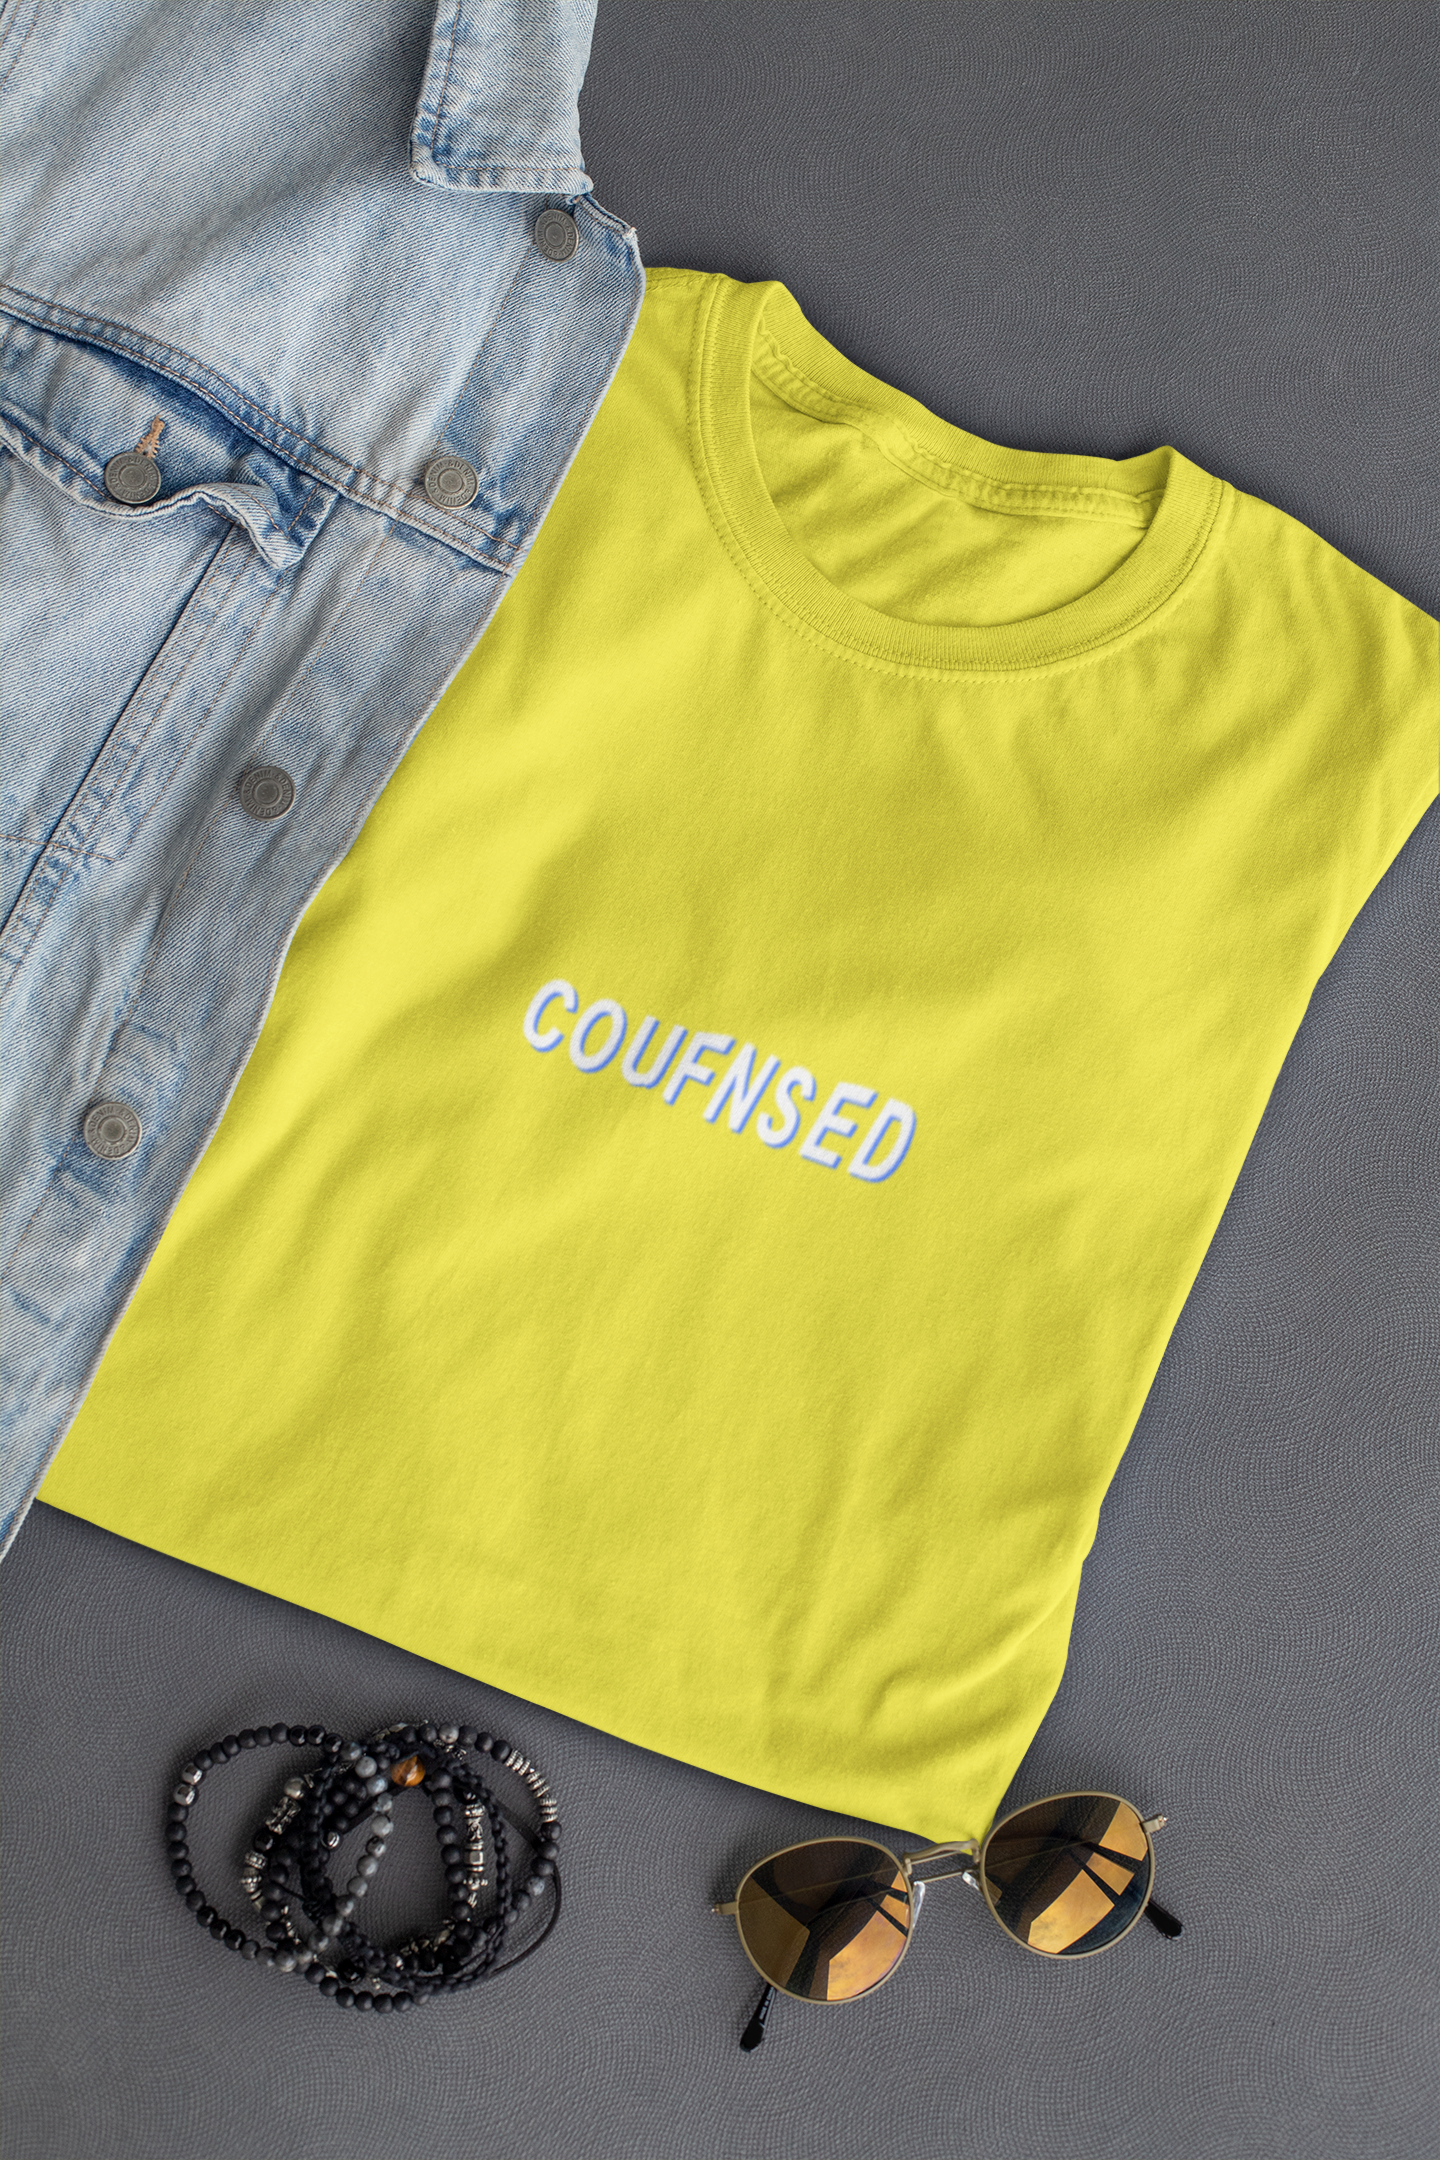 Confused Minimal Women Half Sleeves T-shirt- FunkyTeesClub